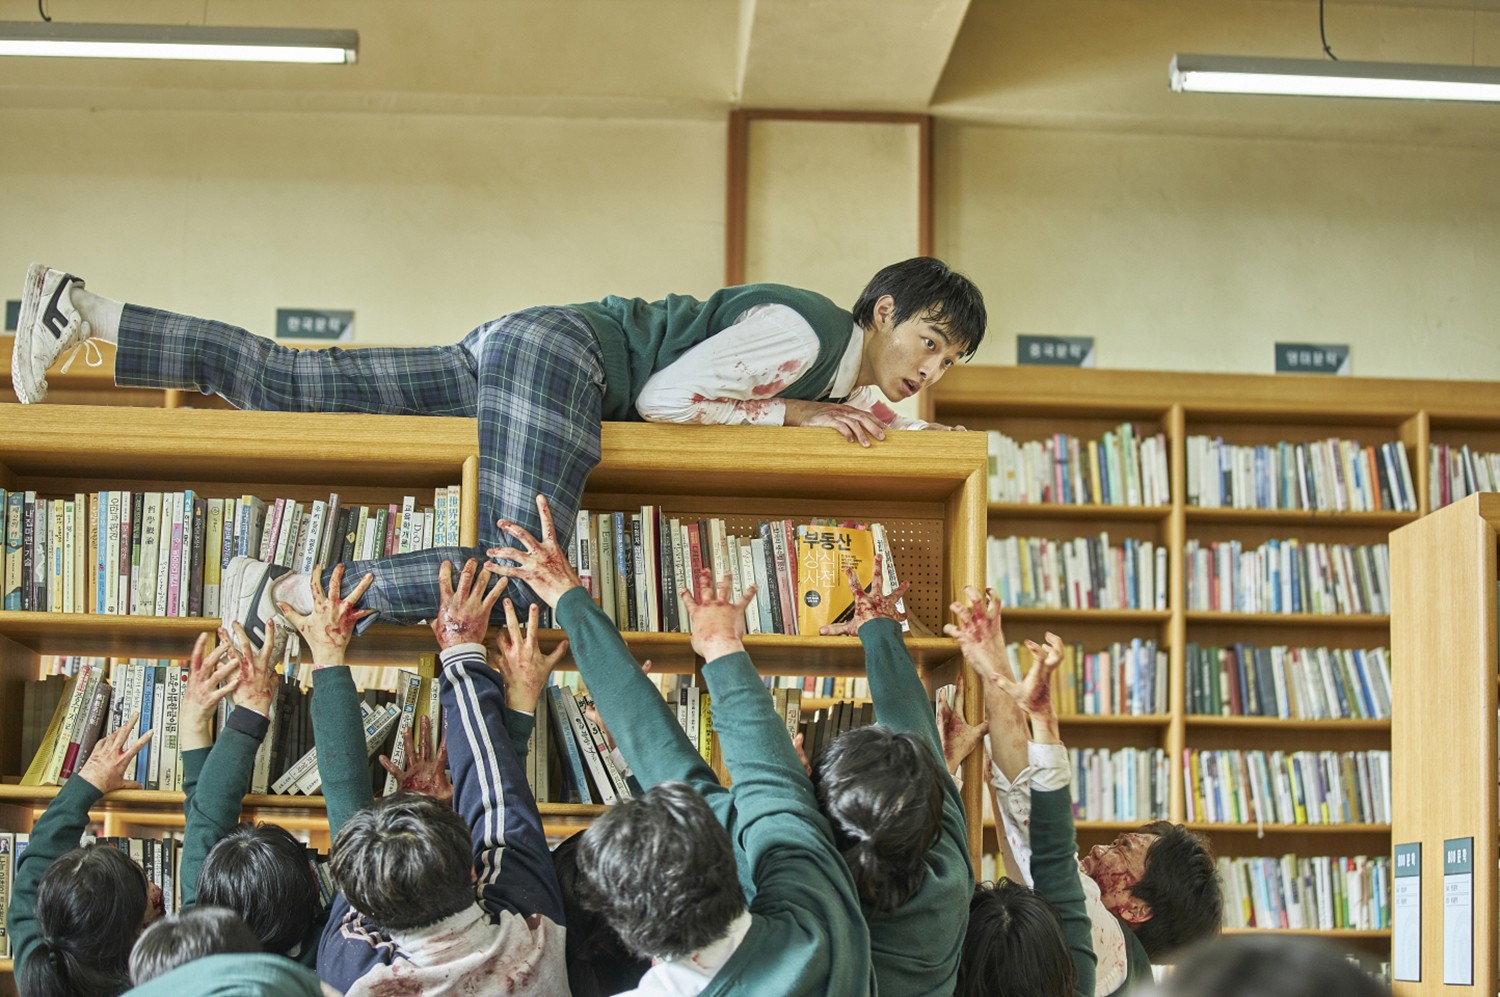 Netflix divulga lista com doramas coreanos que chegarão ao